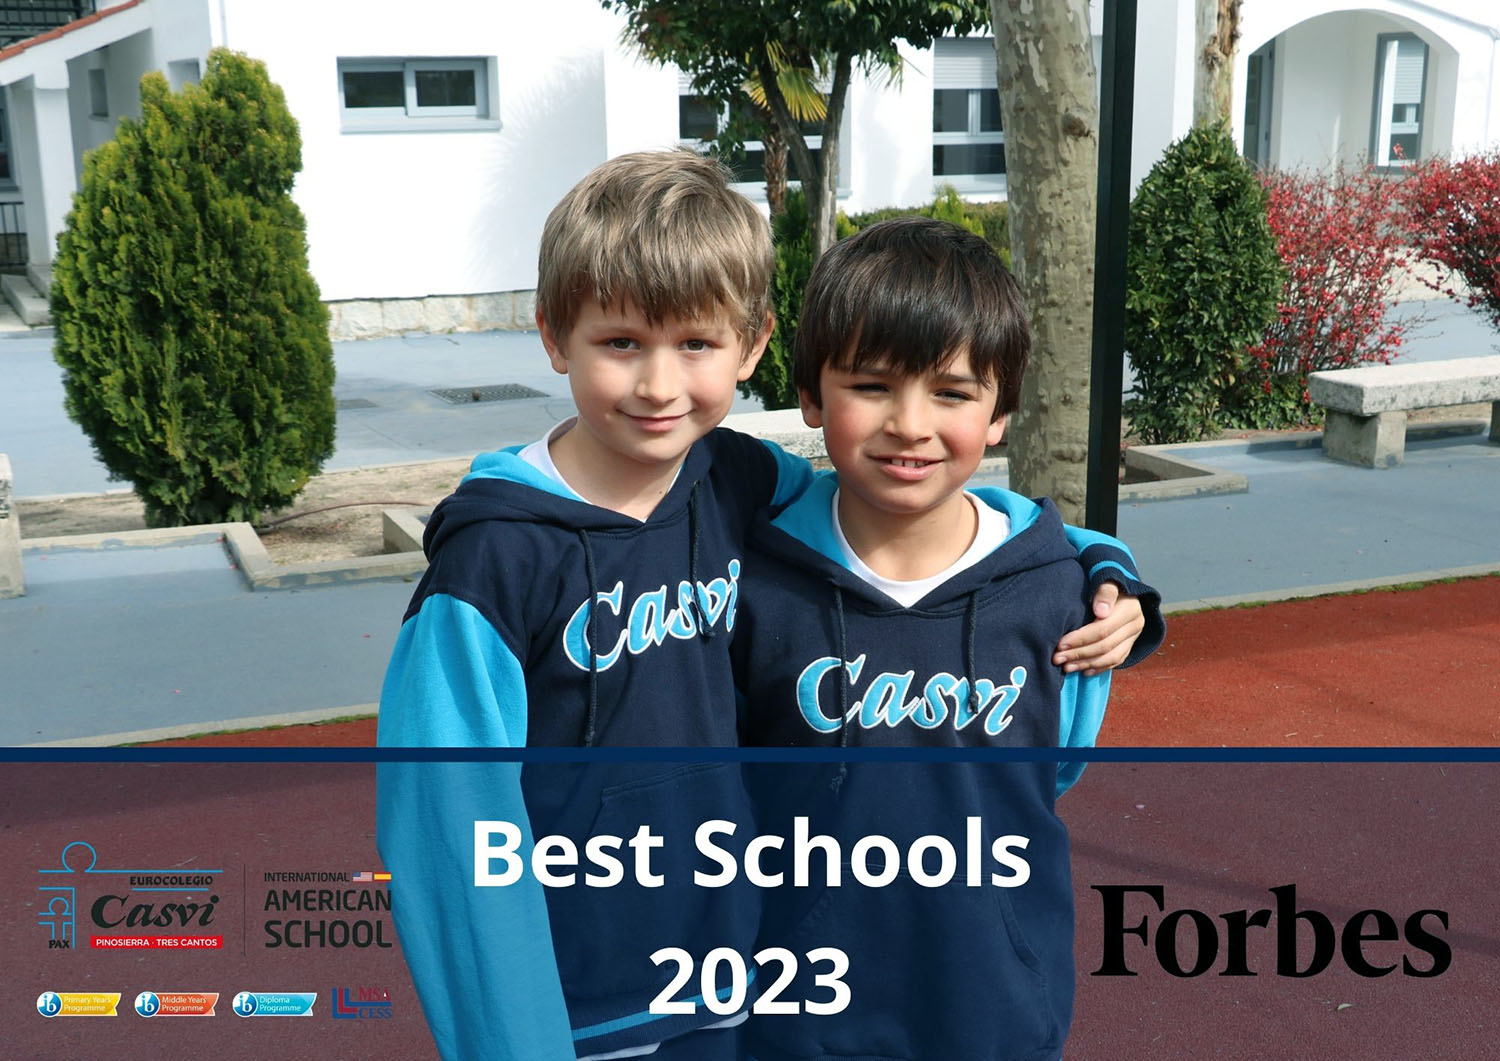 Dos alumnos de Casvi, orgullosos por estar entre los mejores colegios de España según Forbes